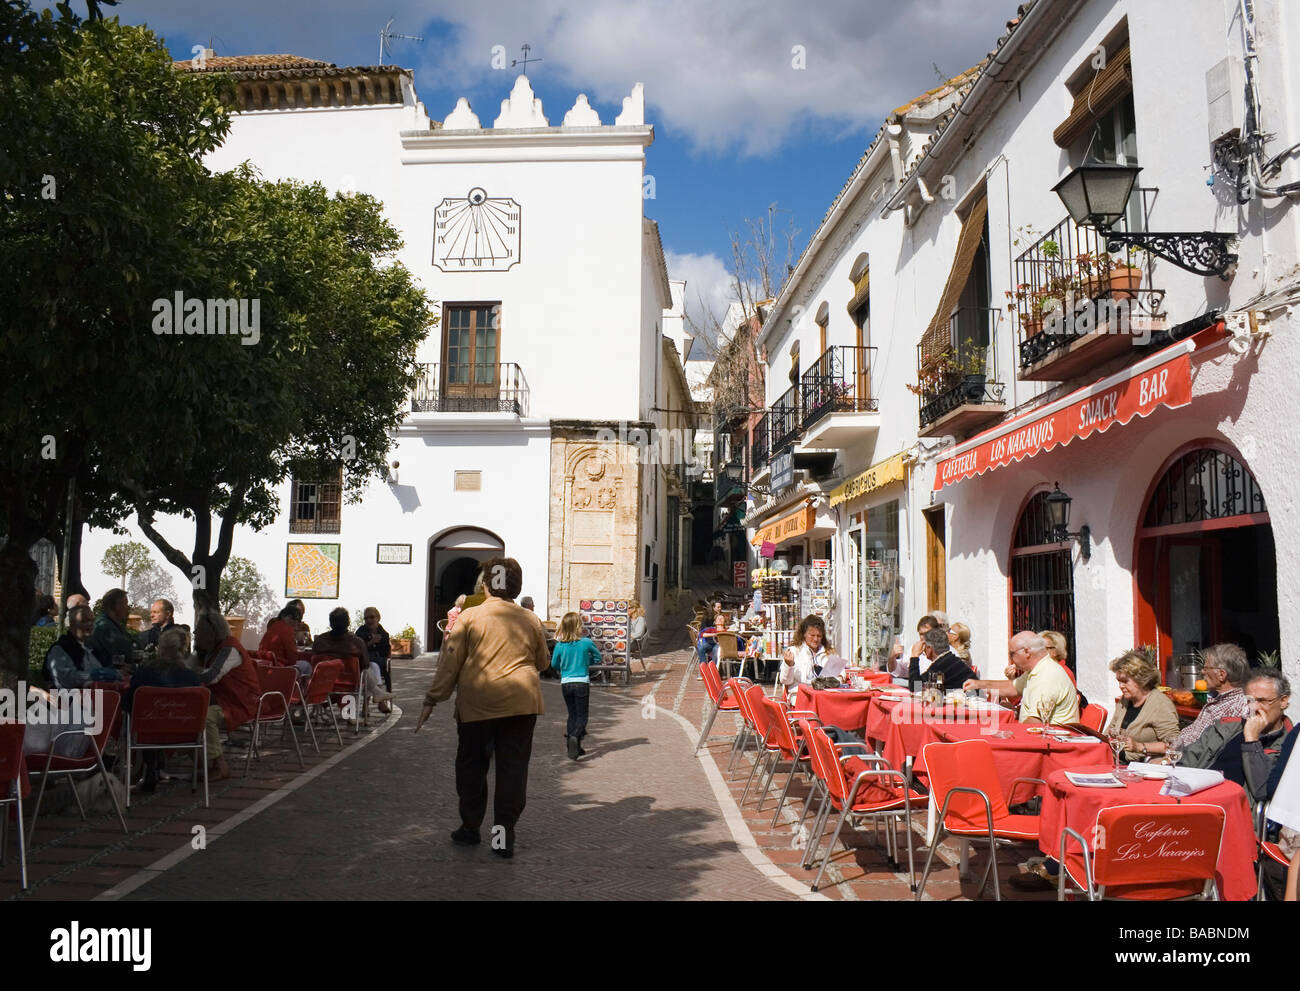 La province de Malaga Marbella Costa del Sol Espagne touristes profitant du soleil dans le carré orange dans la vieille ville Banque D'Images